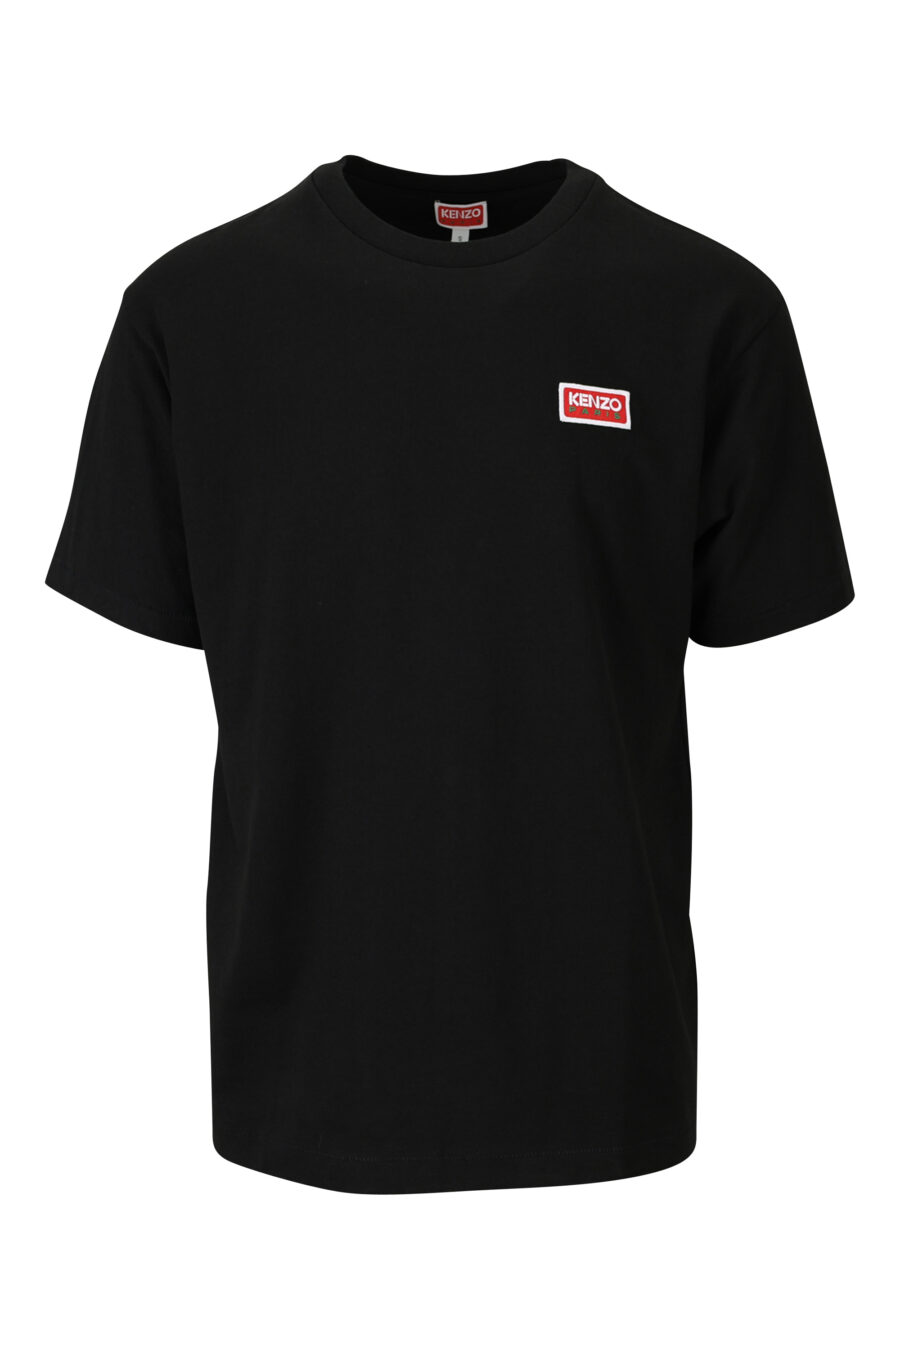 Camiseta negra con logo pequeño "kenzo paris" - 3612230542990